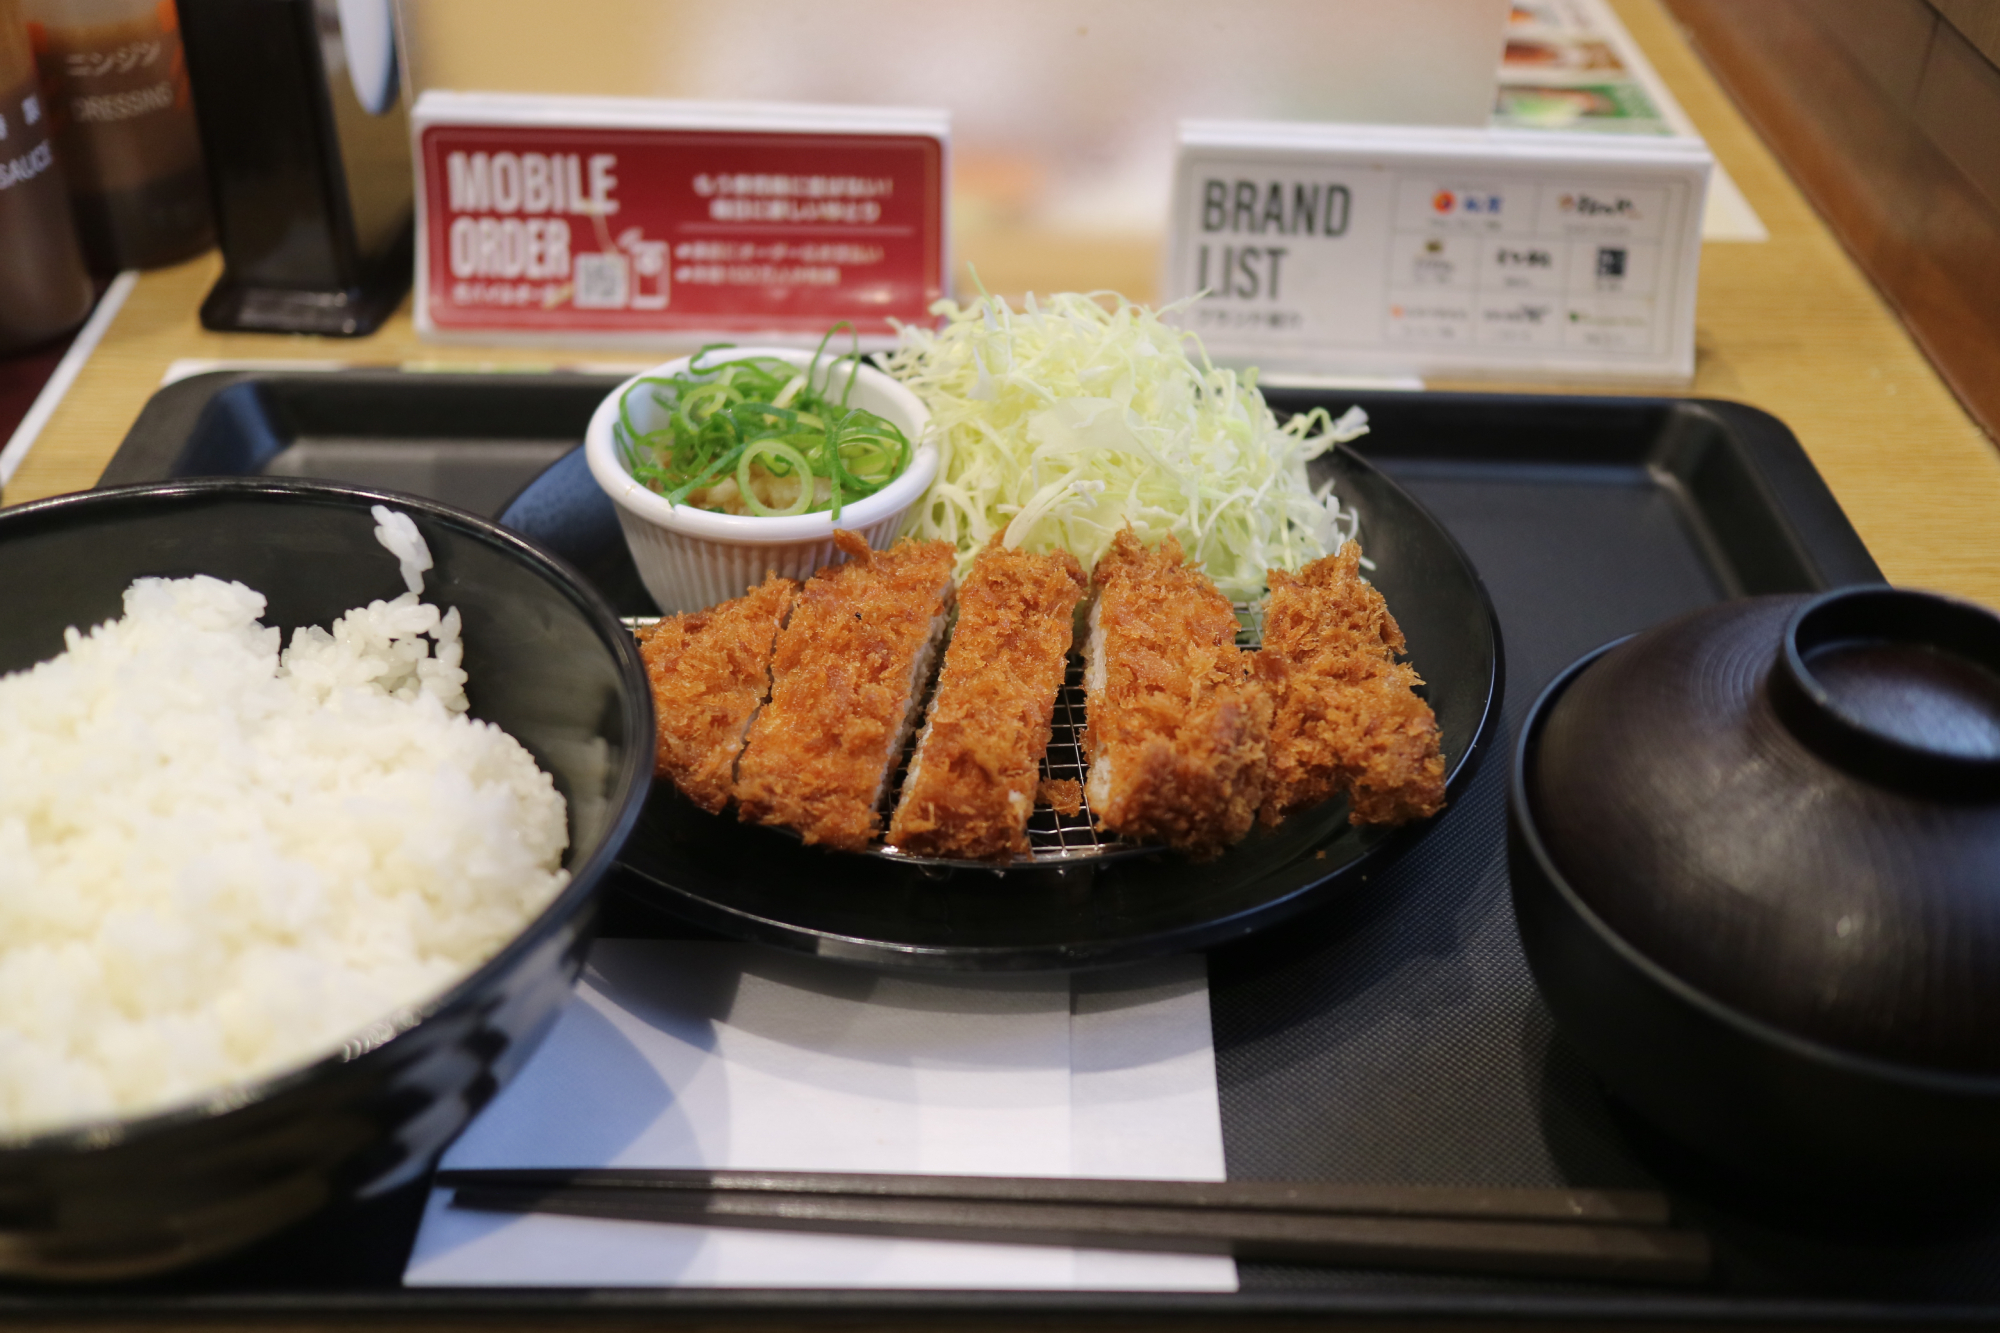 190円引きの500円で食べられる「おろしポン酢ロースかつ定食」